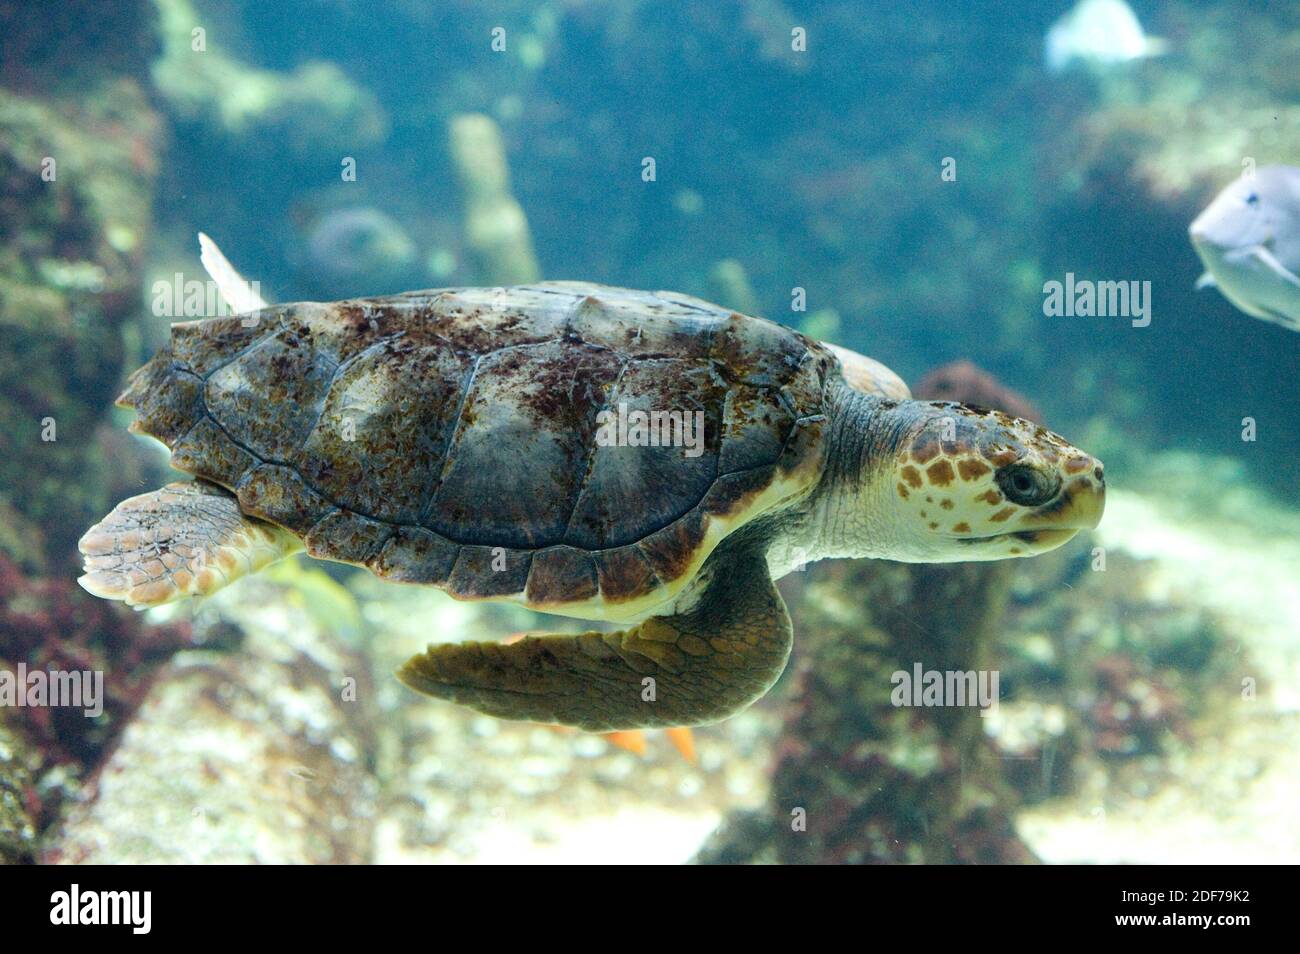 La tortuga de mar (Caretta caretta) es una tortuga marina cosmopolita. Foto de stock